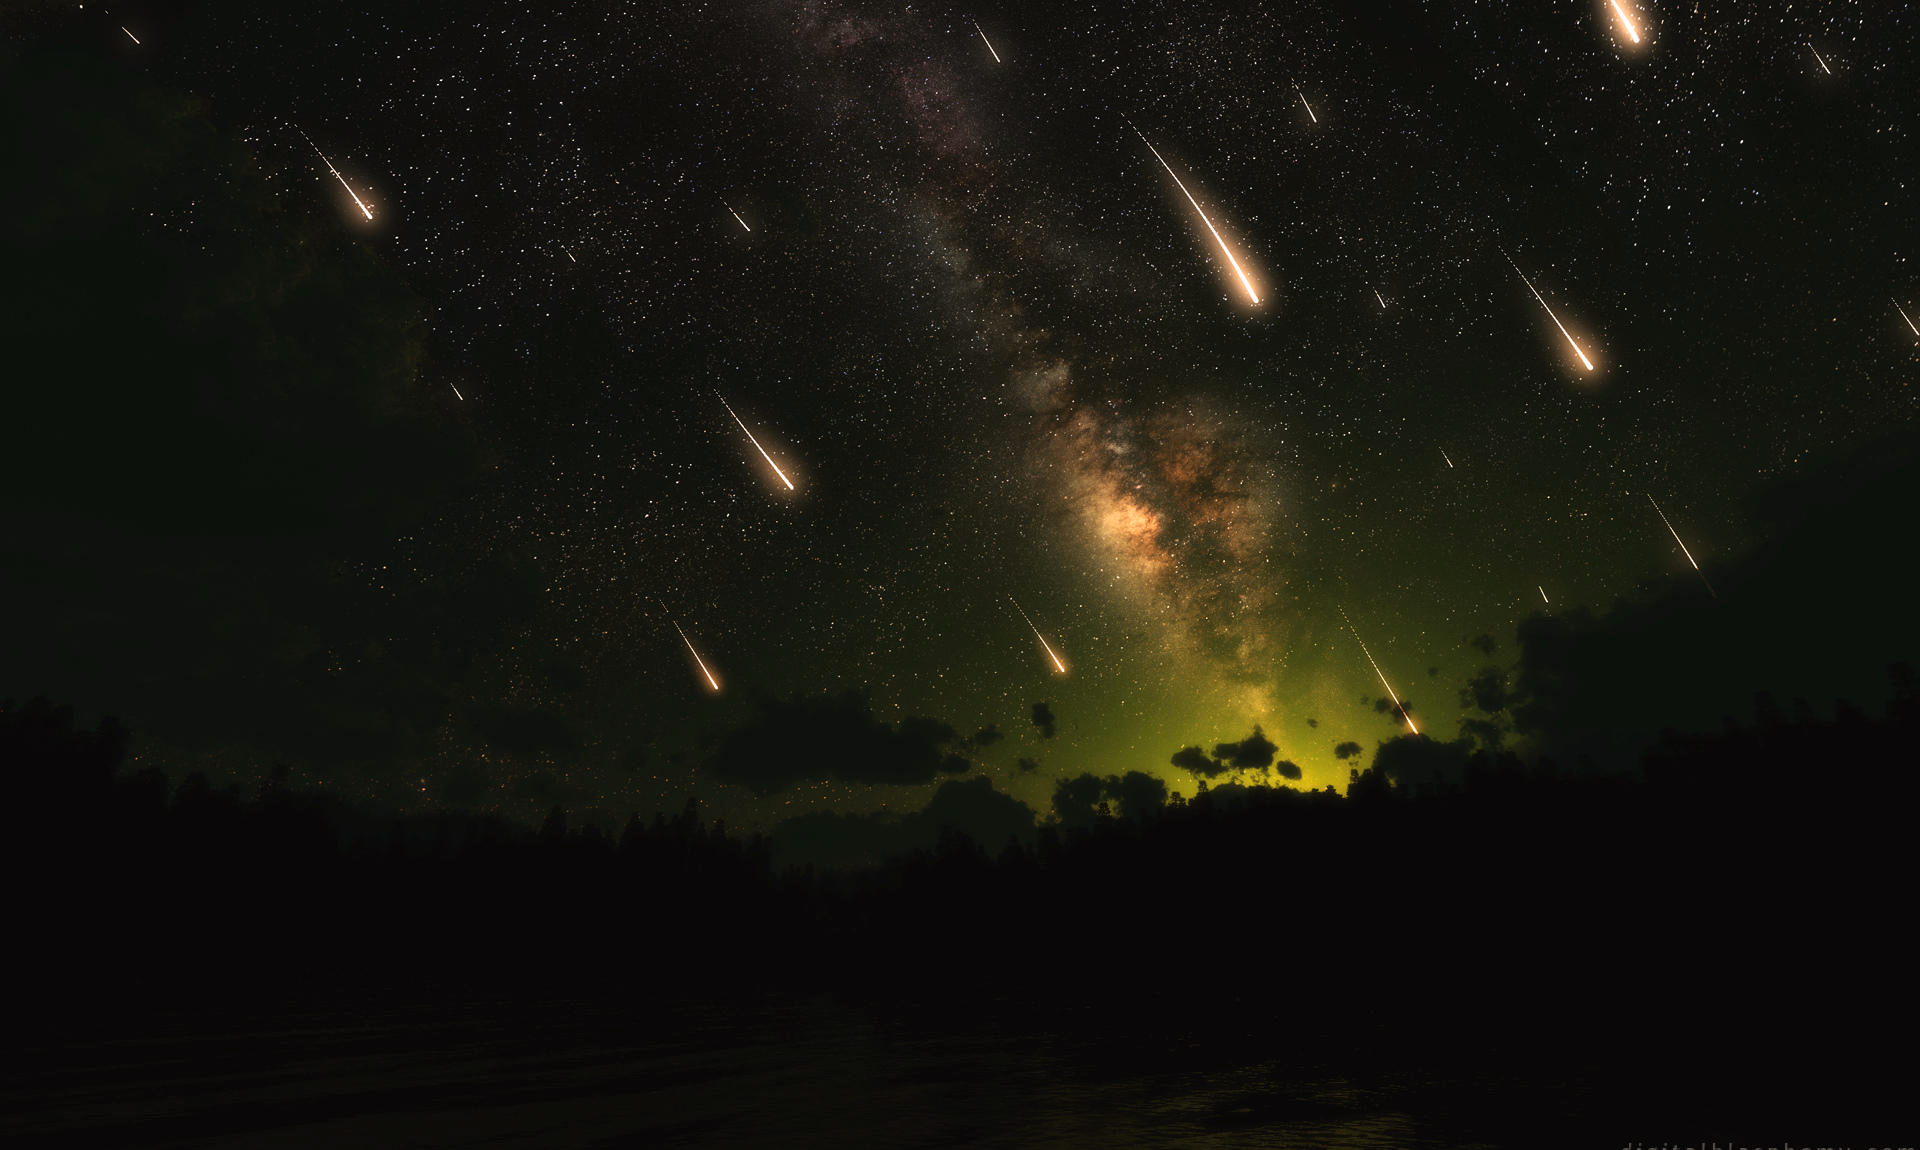 Жители Украины смогут увидеть волшебный звездопад Леониды и загадать желание: яркий метеоритный дождь озарит небо уже 17 ноября 